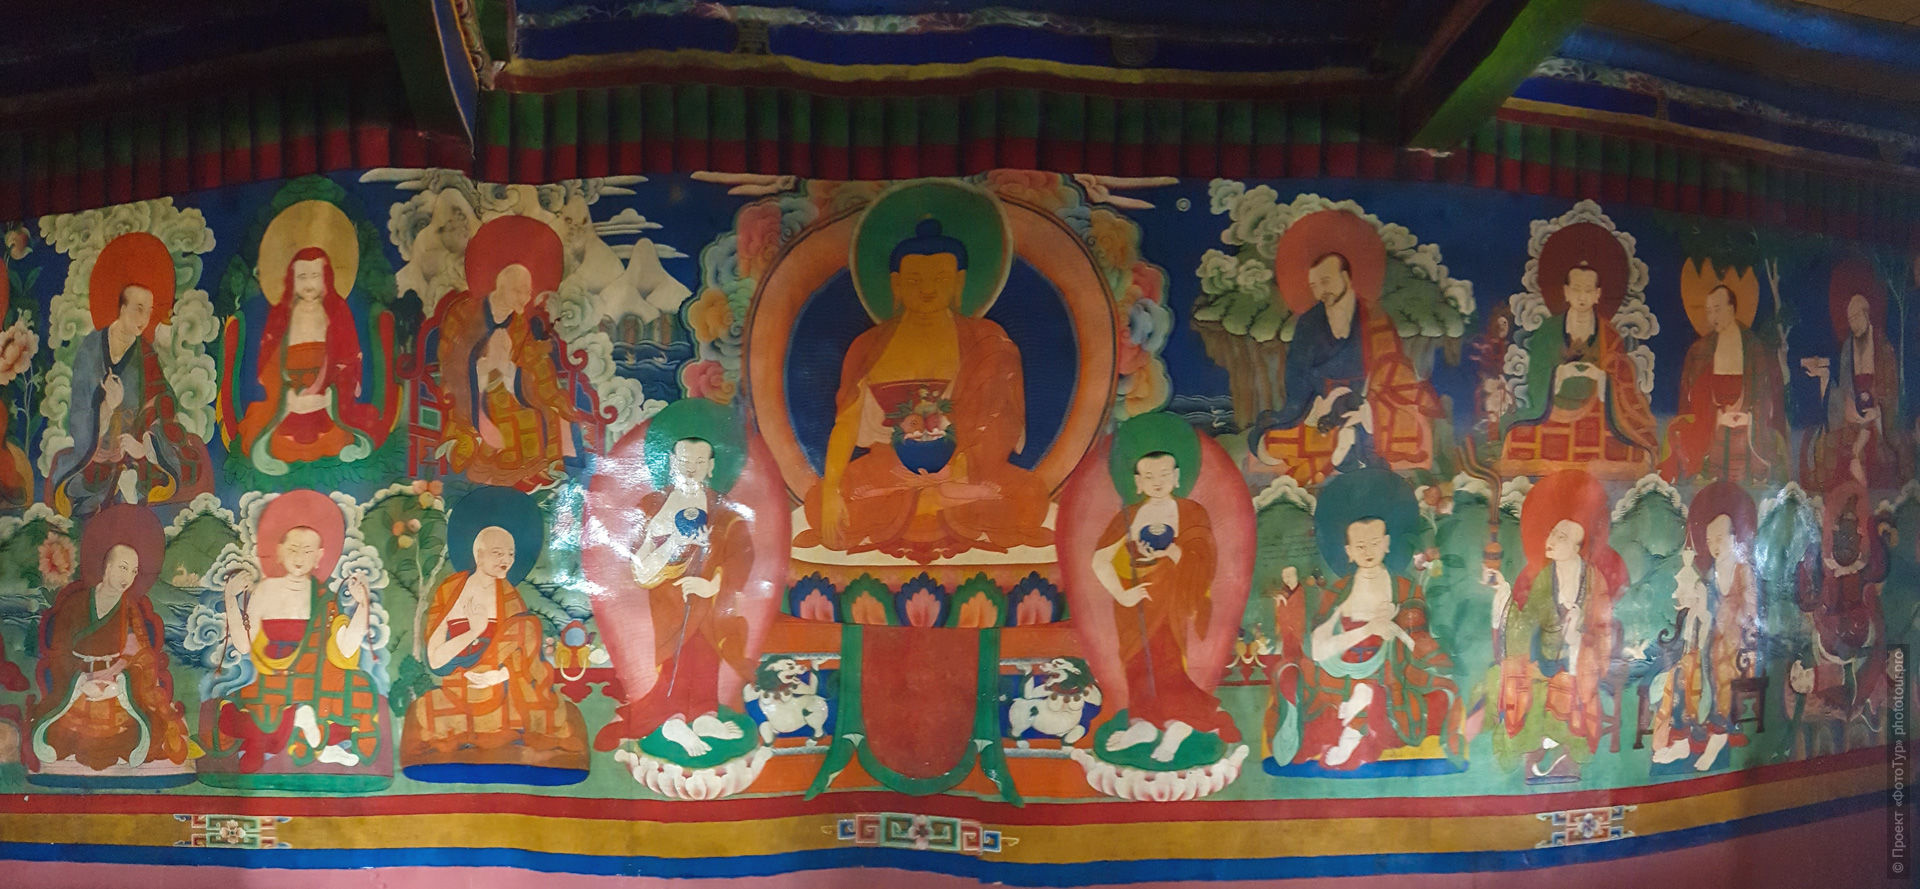 Будда и 16 архатов, буддийский монастырь Ликир Гонпа, Ладакх, Гималаи, Северная Индия.